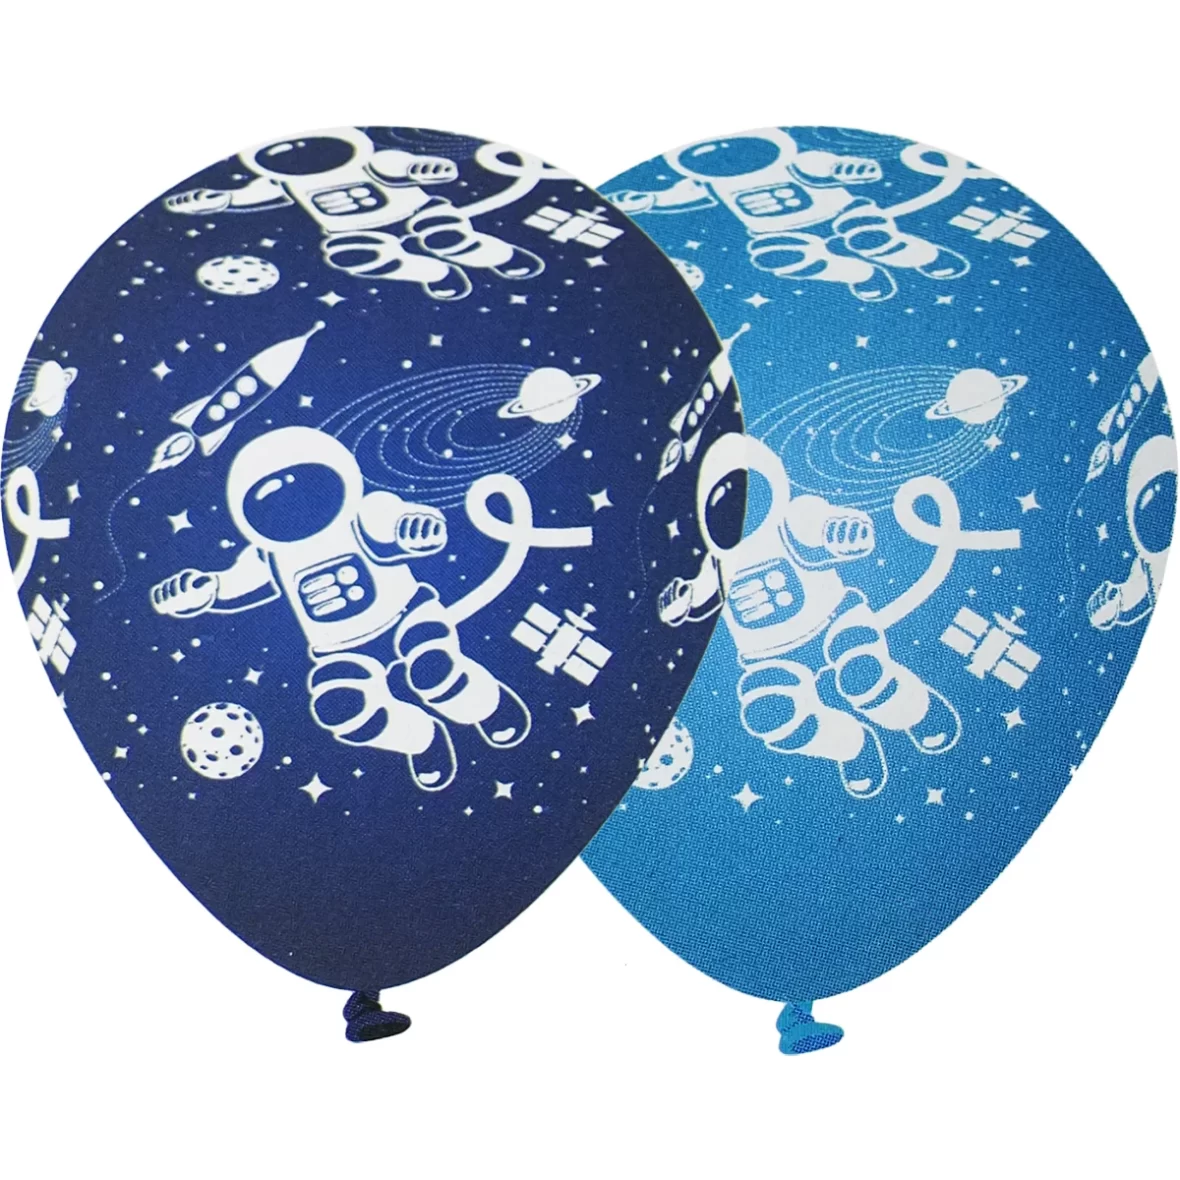 Set 6 baloane Space Party, 30 cm